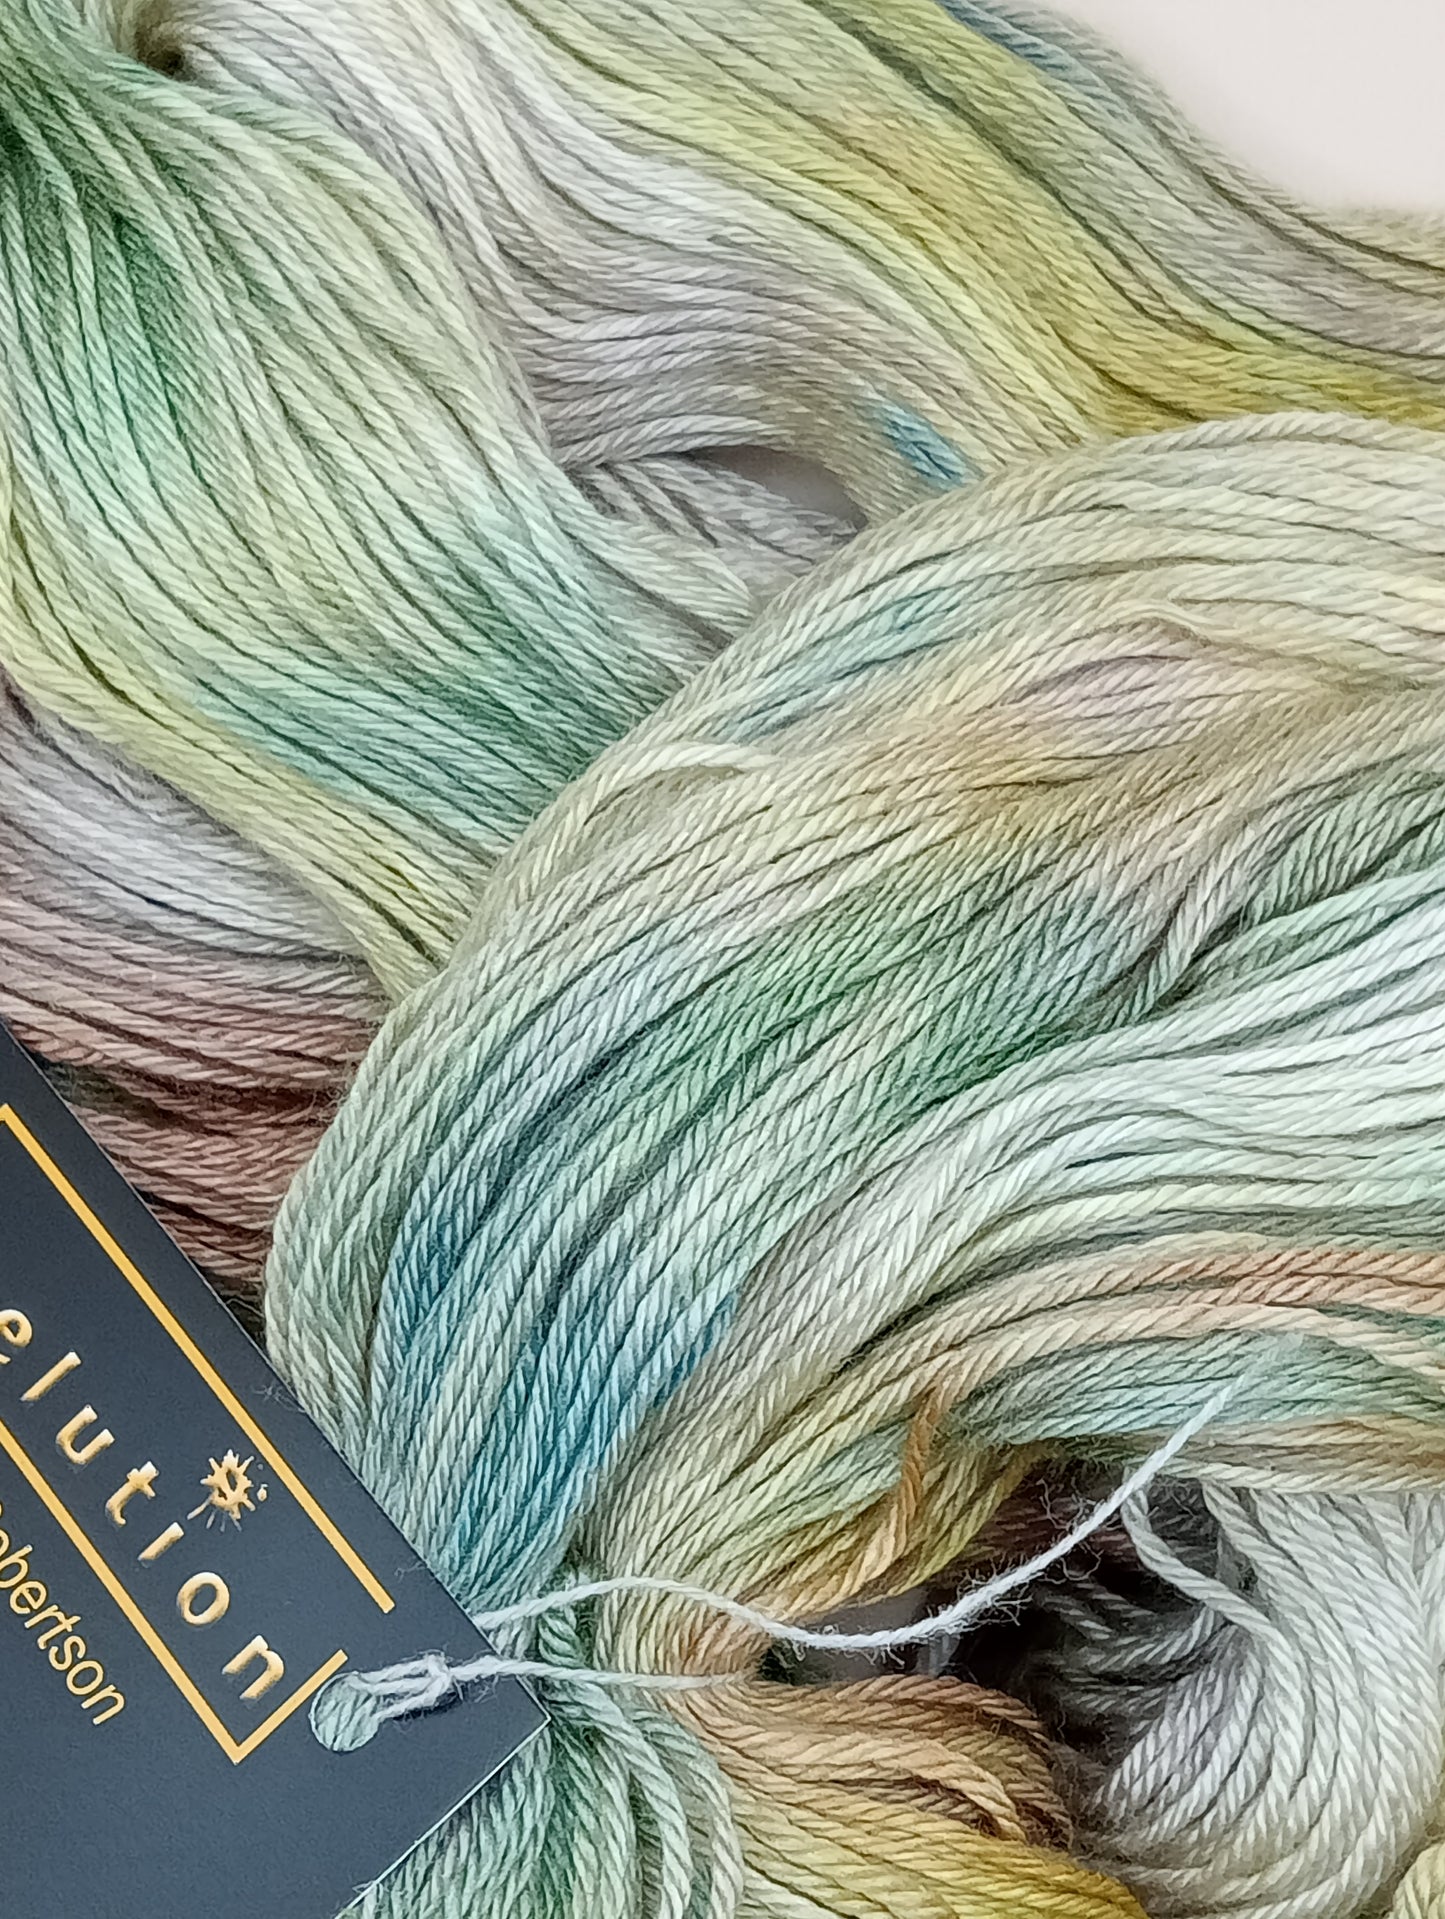 100G Merino/Silk hand dyed luxury Yarn 4 Ply- "artemisia"